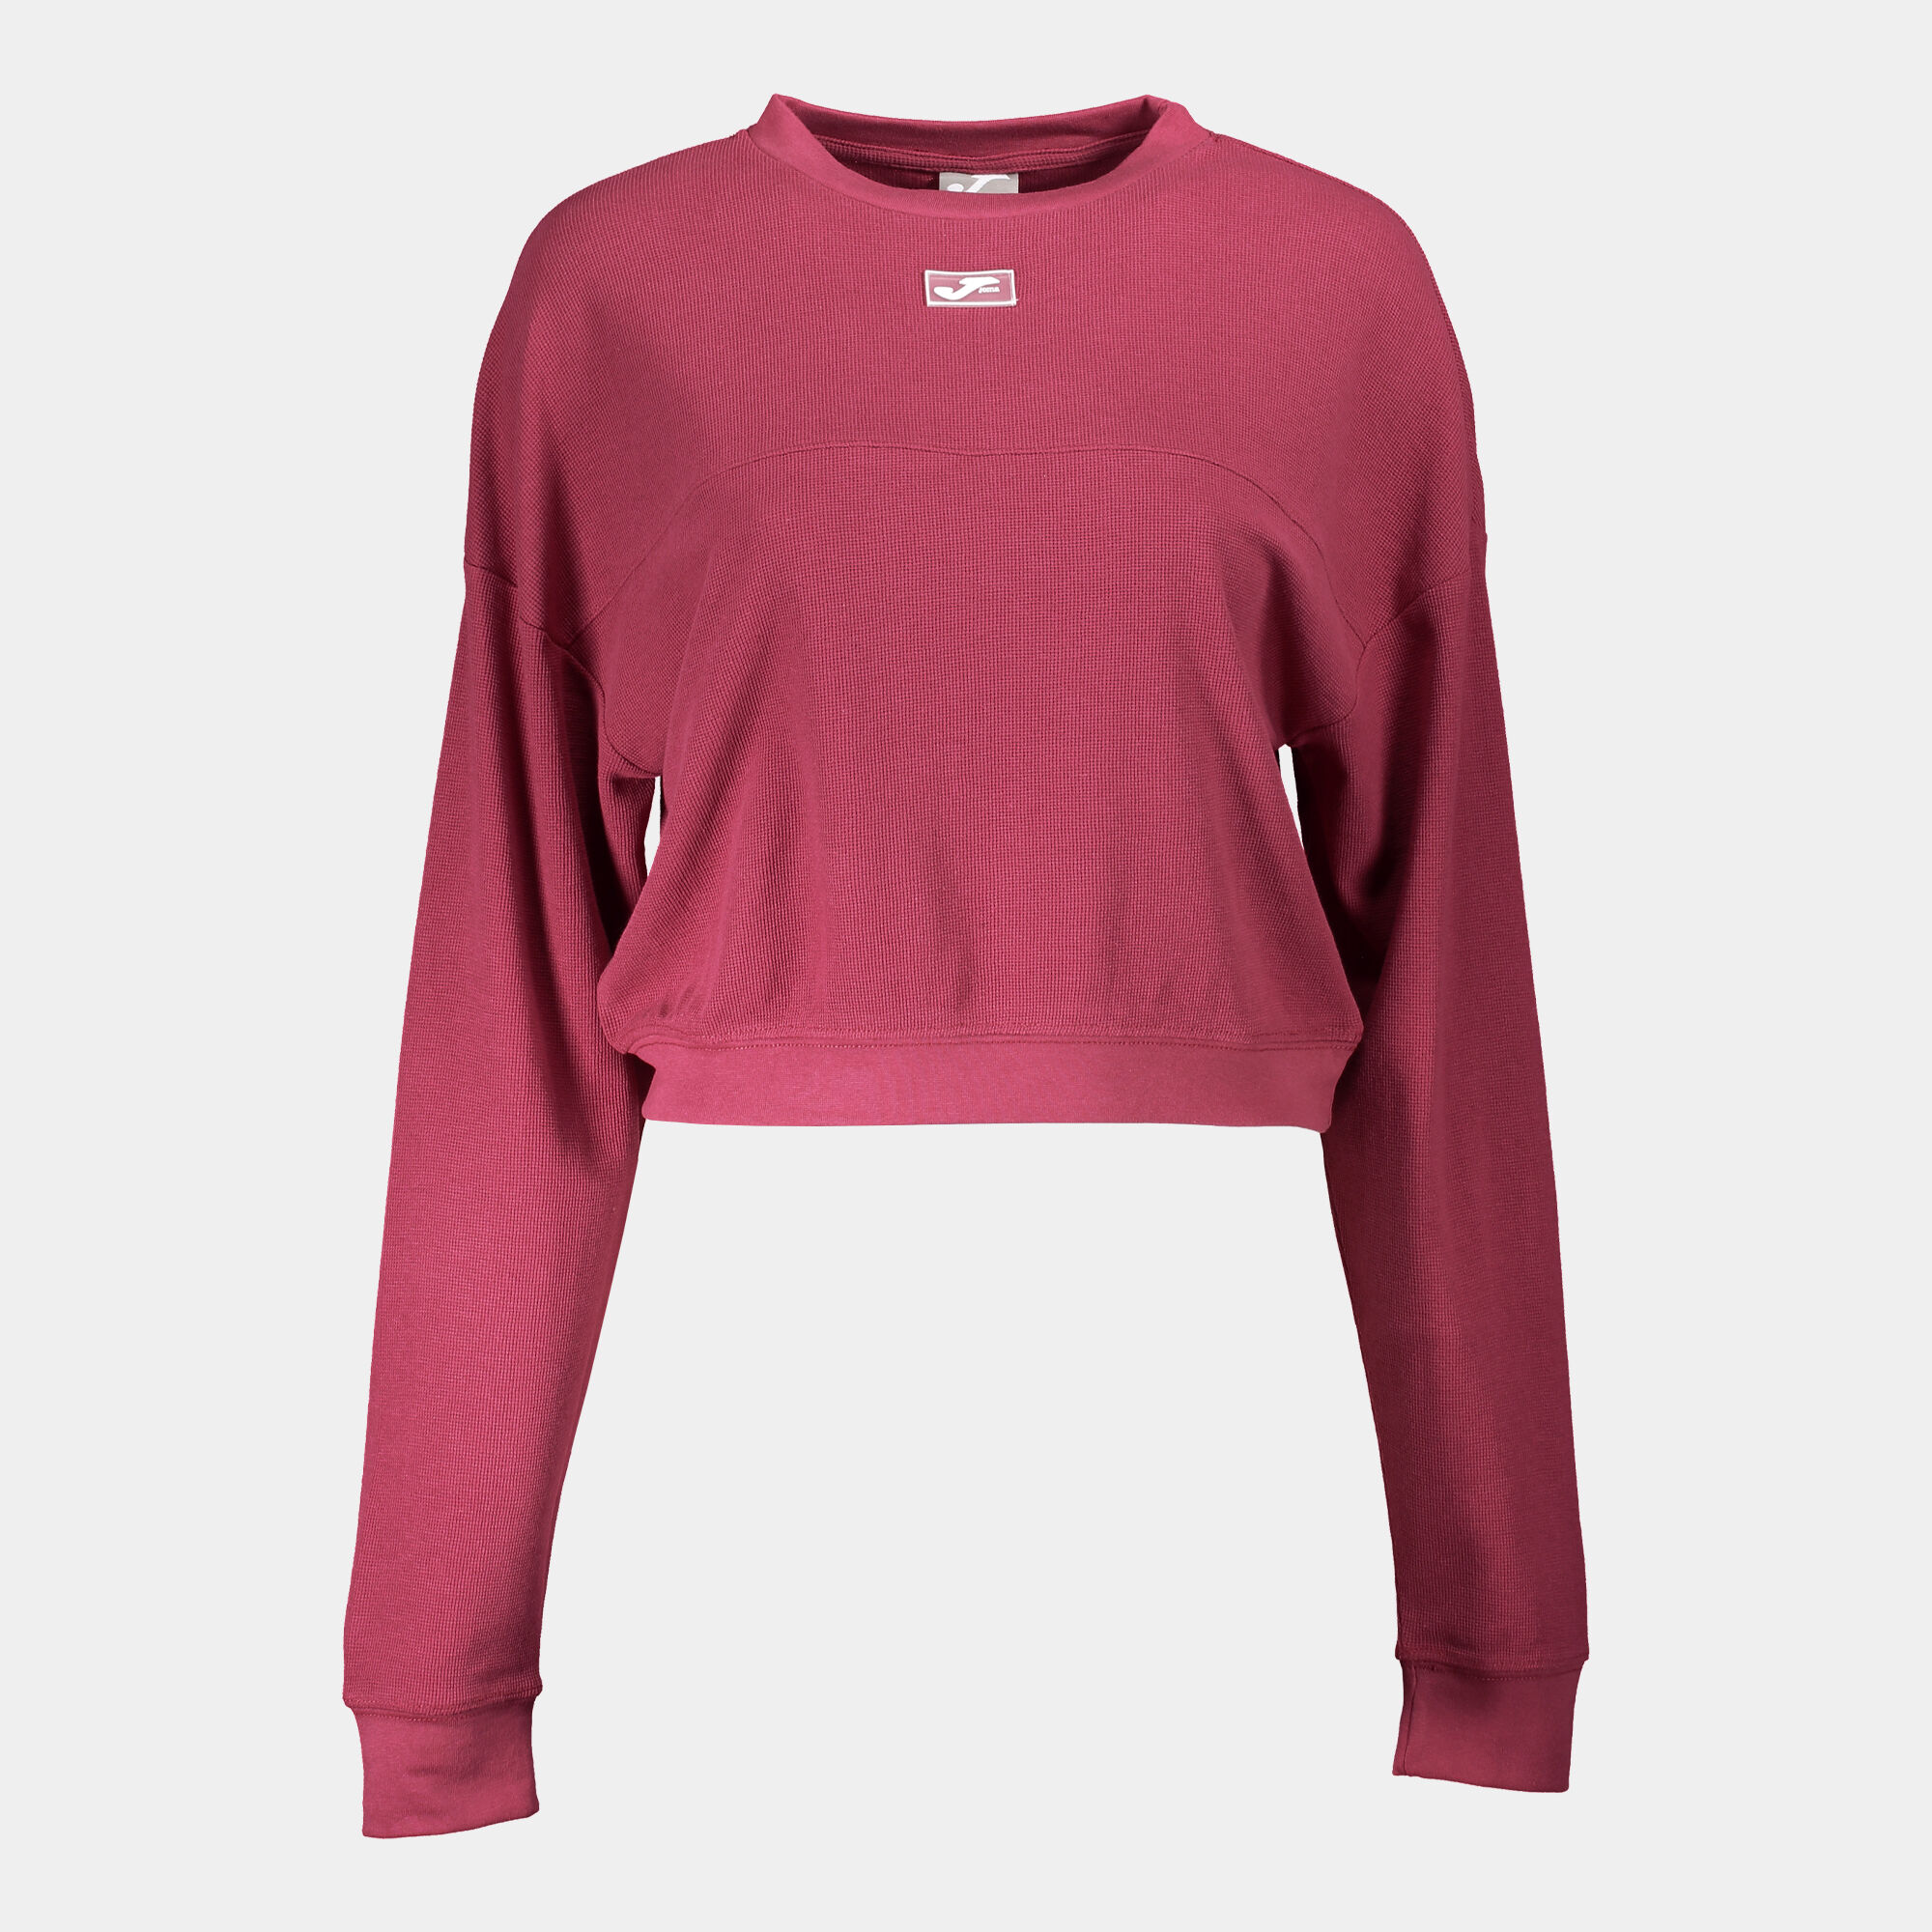 Sweat-shirt femme Daphne rose